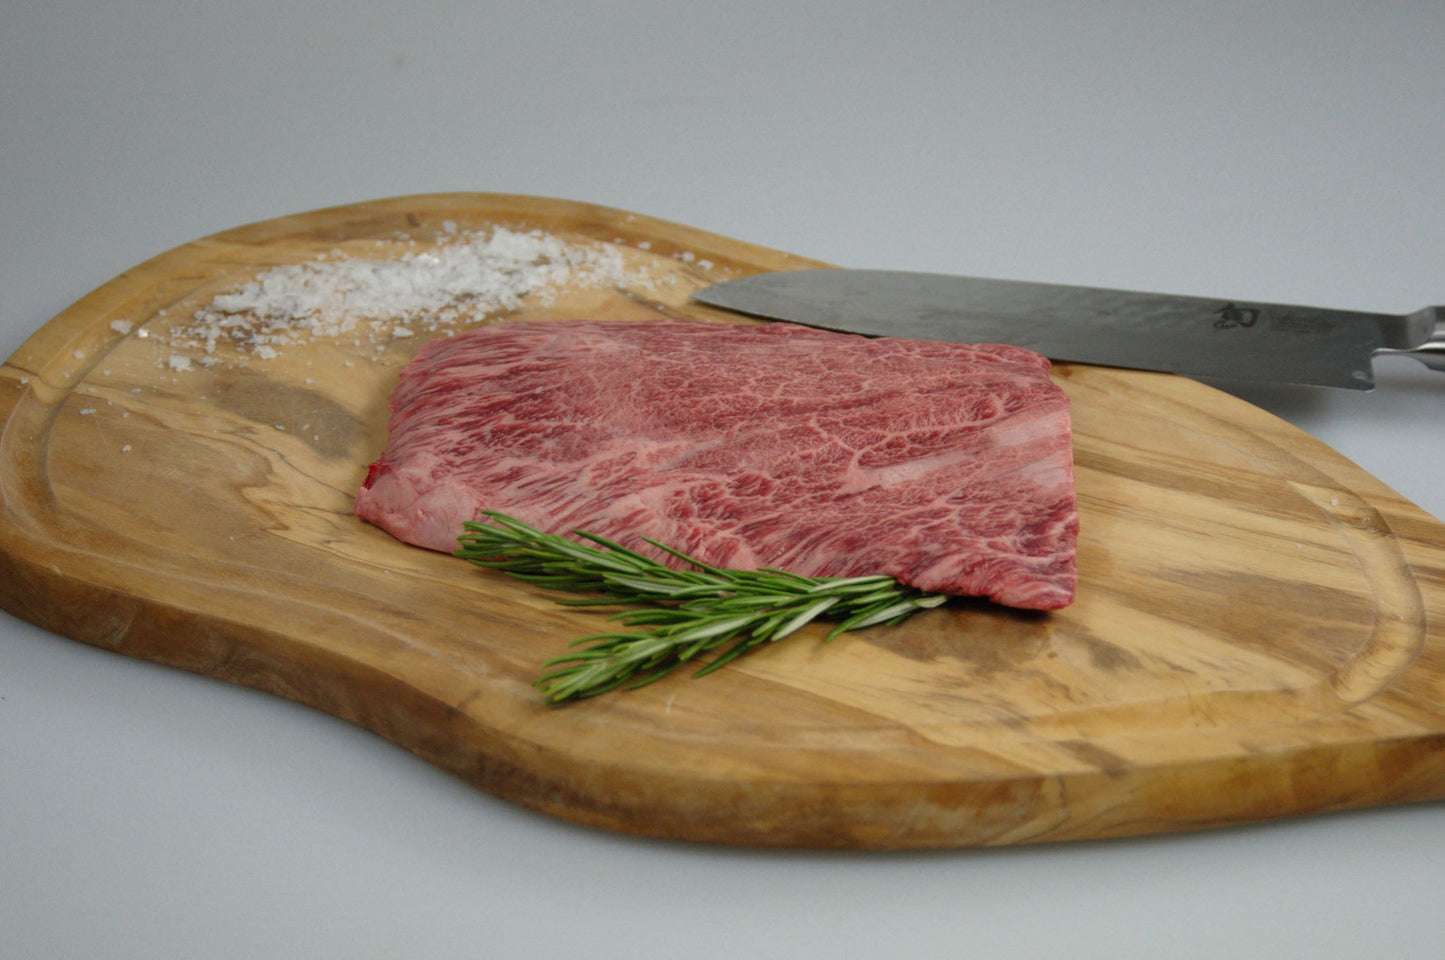 100% Full Blood Wagyu Flat Iron Steak